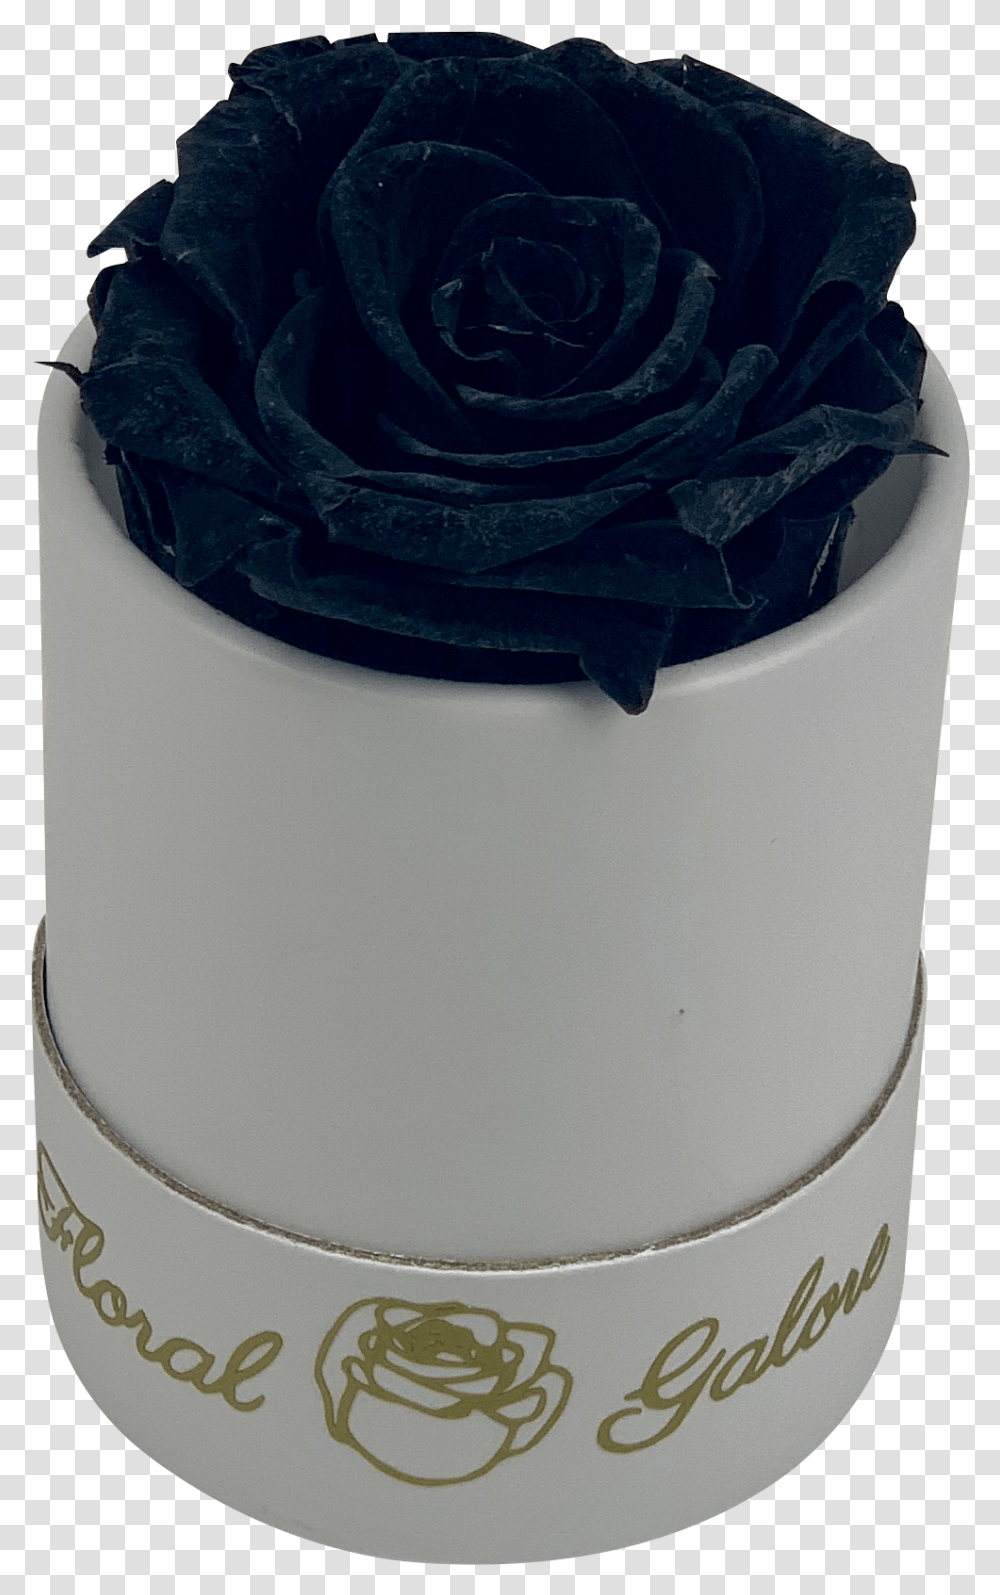 Blue Rose, Flower, Plant, Cake, Dessert Transparent Png